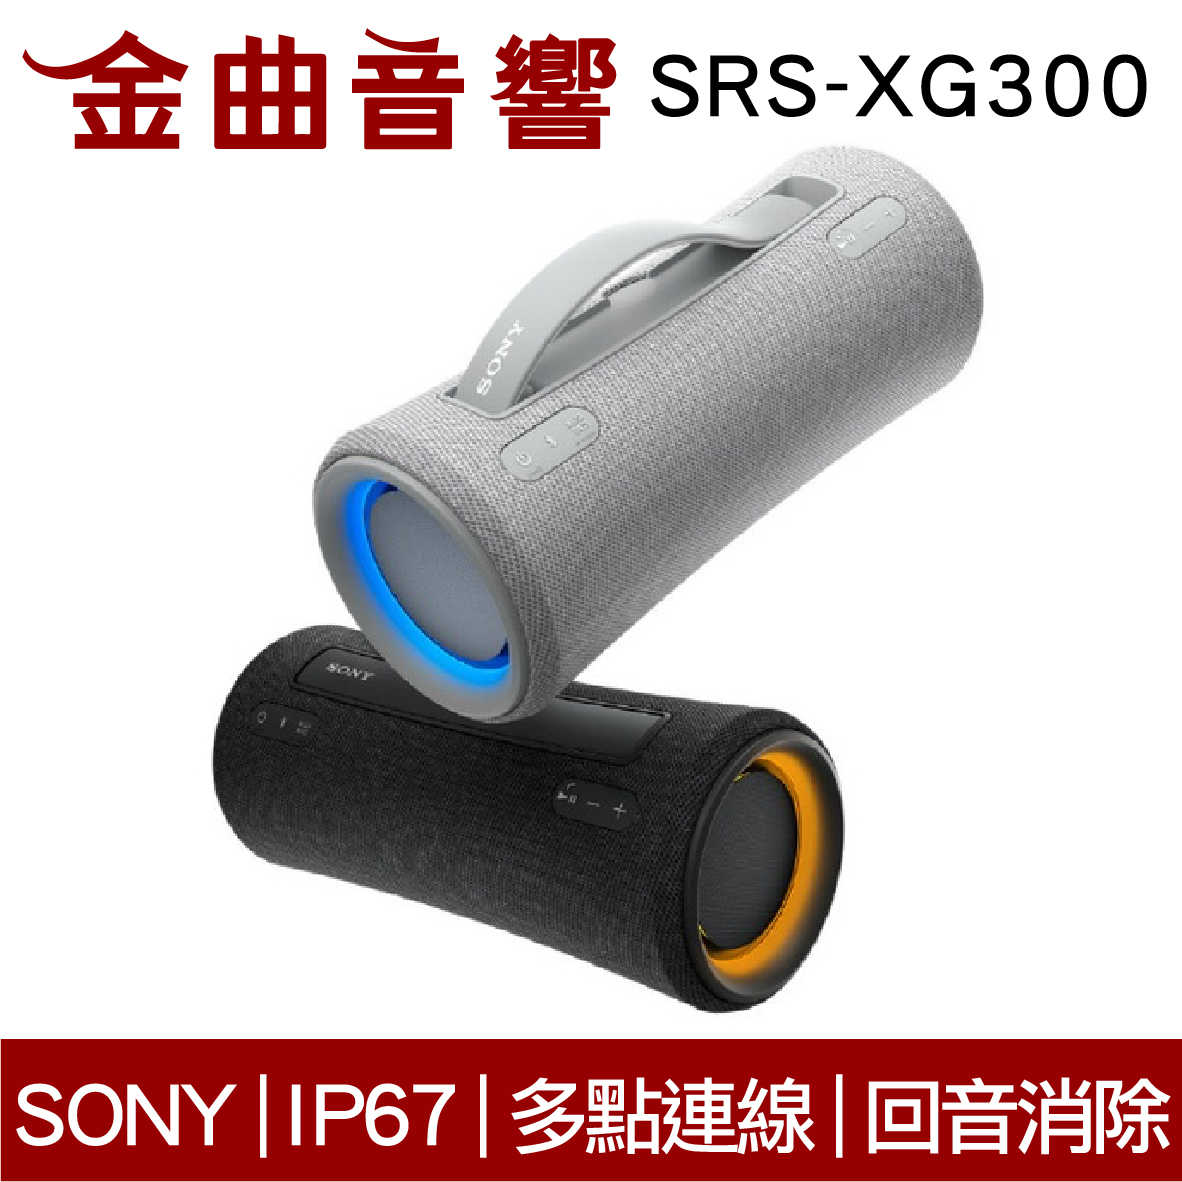 SONY 索尼 SRS-XG300 可攜式 IP67 長效續航 無線 揚聲器 藍芽喇叭 | 金曲音響